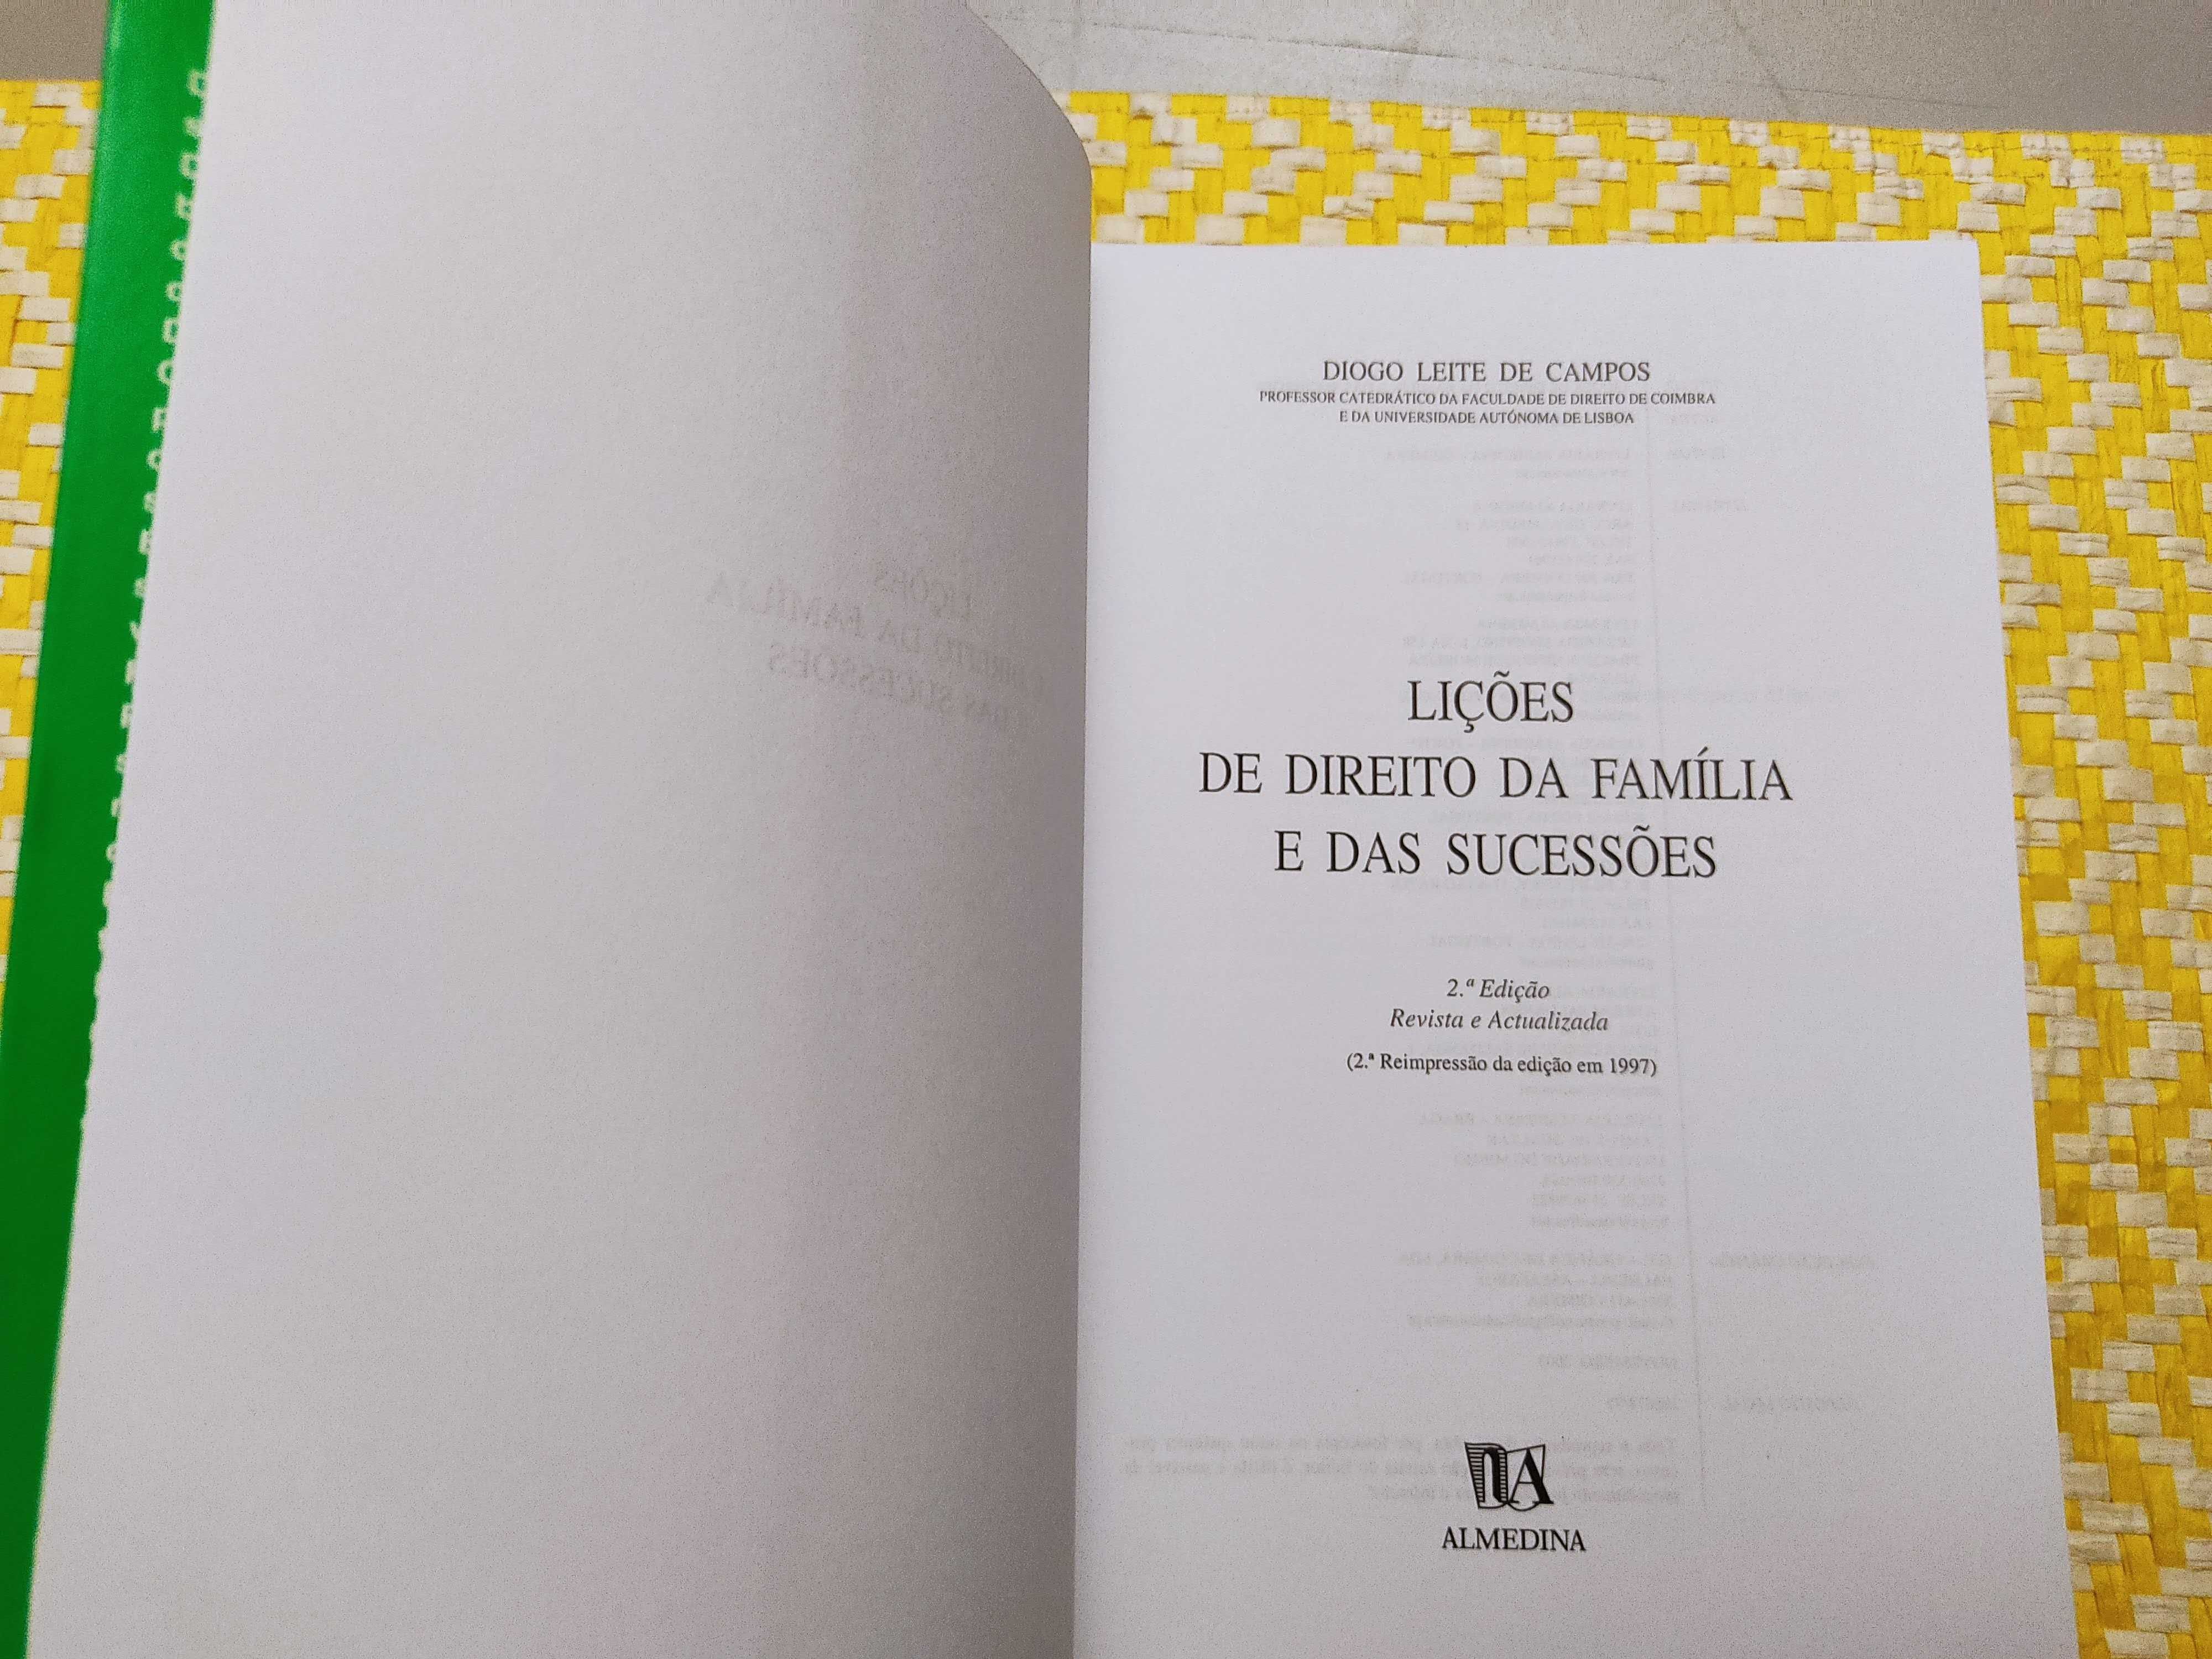 Lições de Direito da Família e das Sucessões
de Diogo Leite de Campos